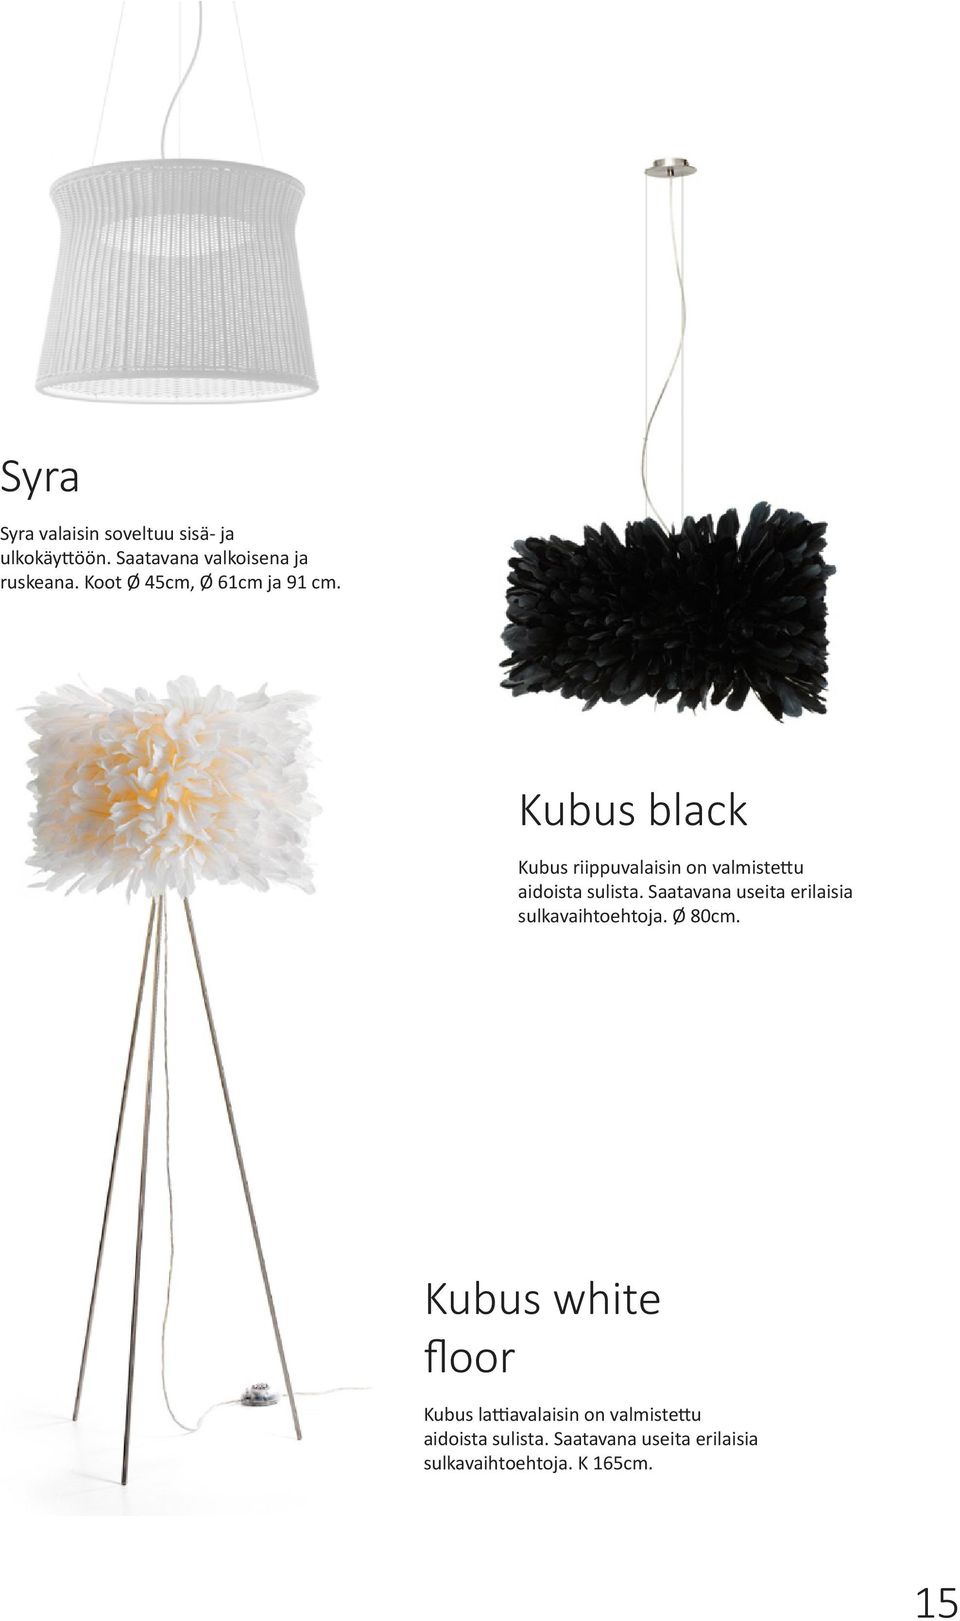 Kubus black Kubus riippuvalaisin on valmistettu aidoista sulista.